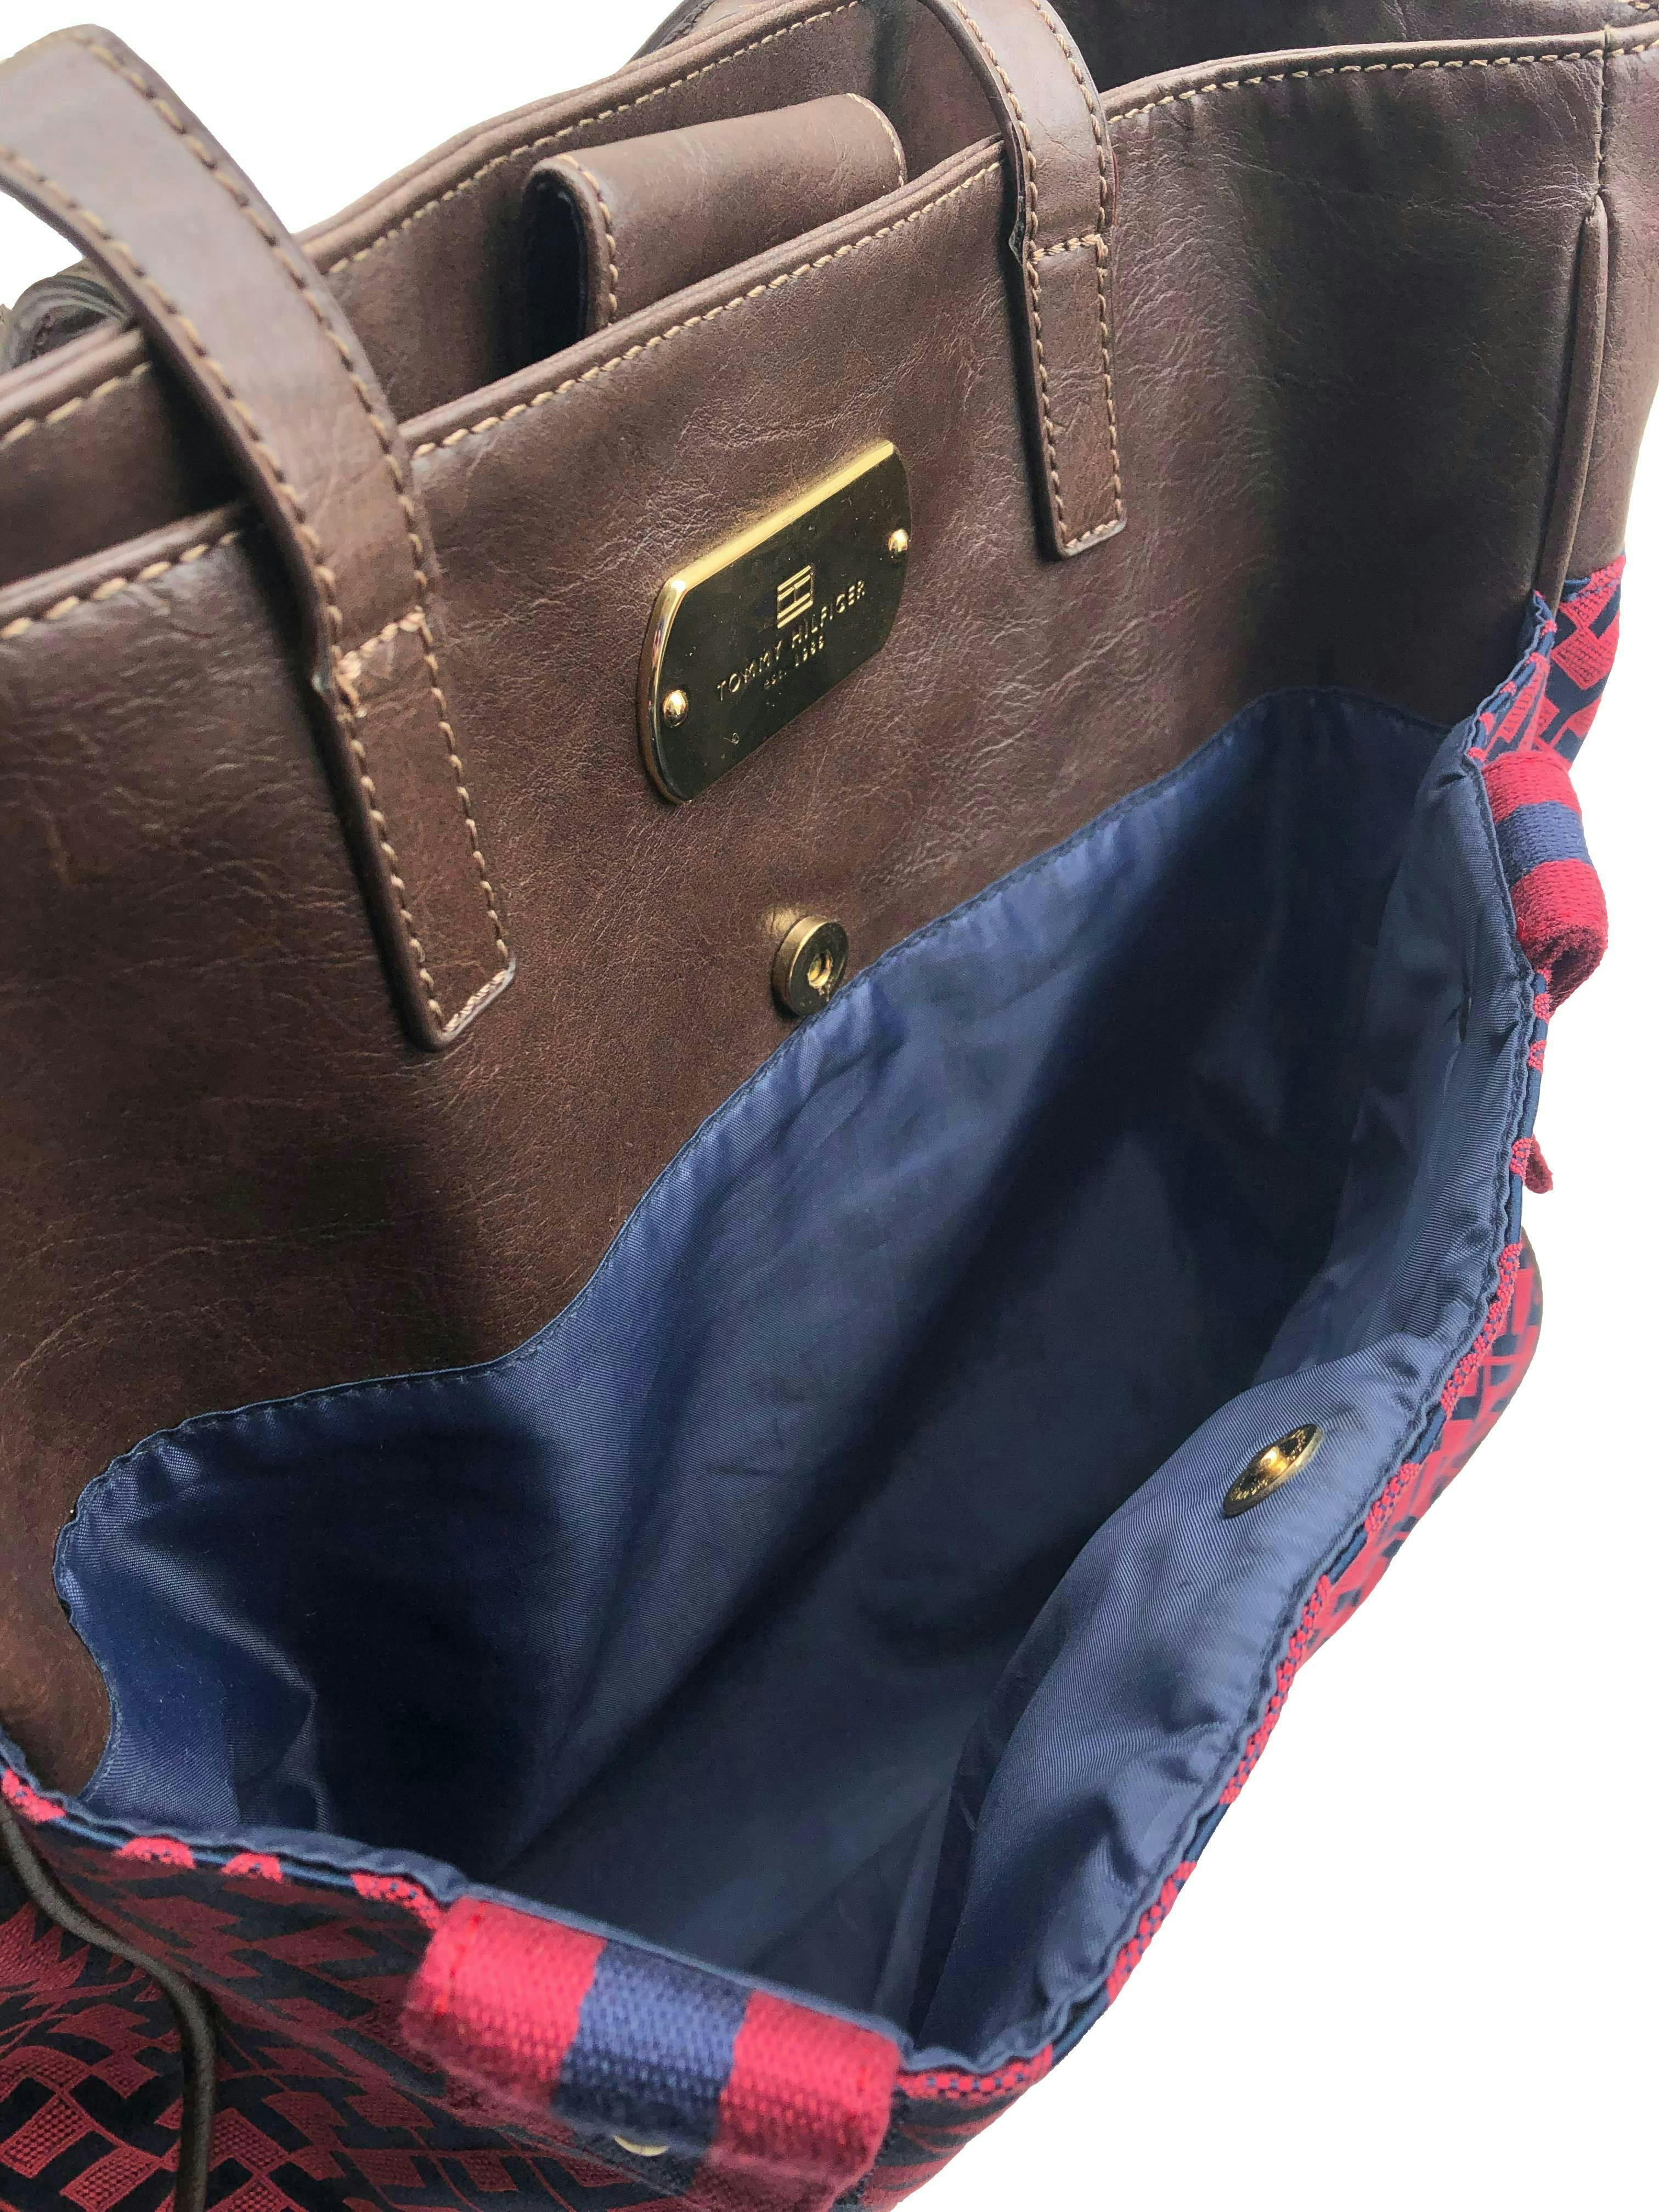 Cartera Tommy Hilfiger monograma azul y rojo con detalles tipo cuero marrón, forro interno con un compartimento con zipper, cierra co broche. Medidas 34x33x12cm.  Nueva